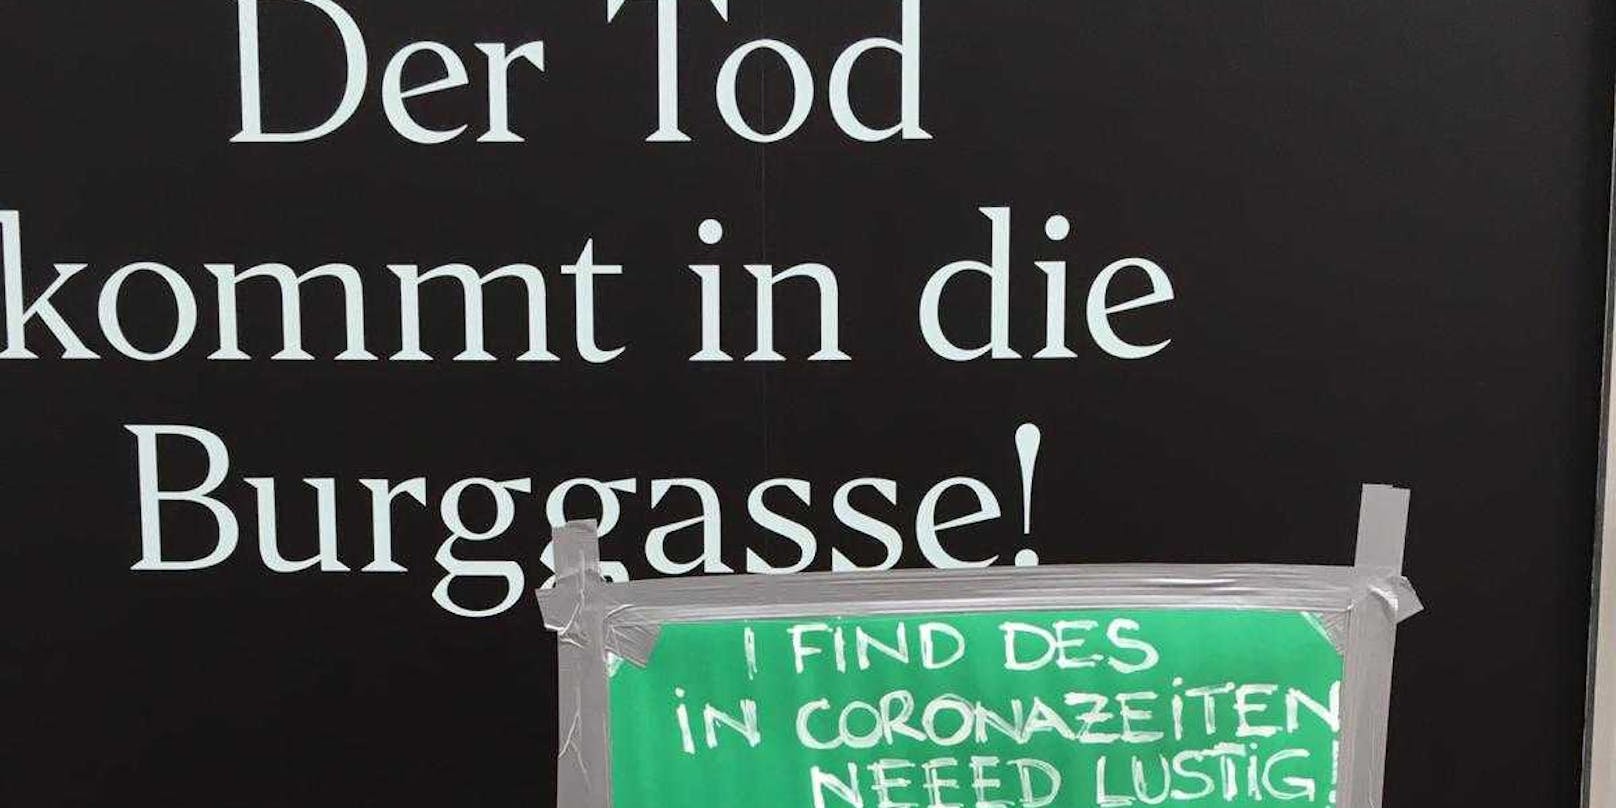 "Der Tod kommt in die Burggasse": Für Anrainer nicht lustig.